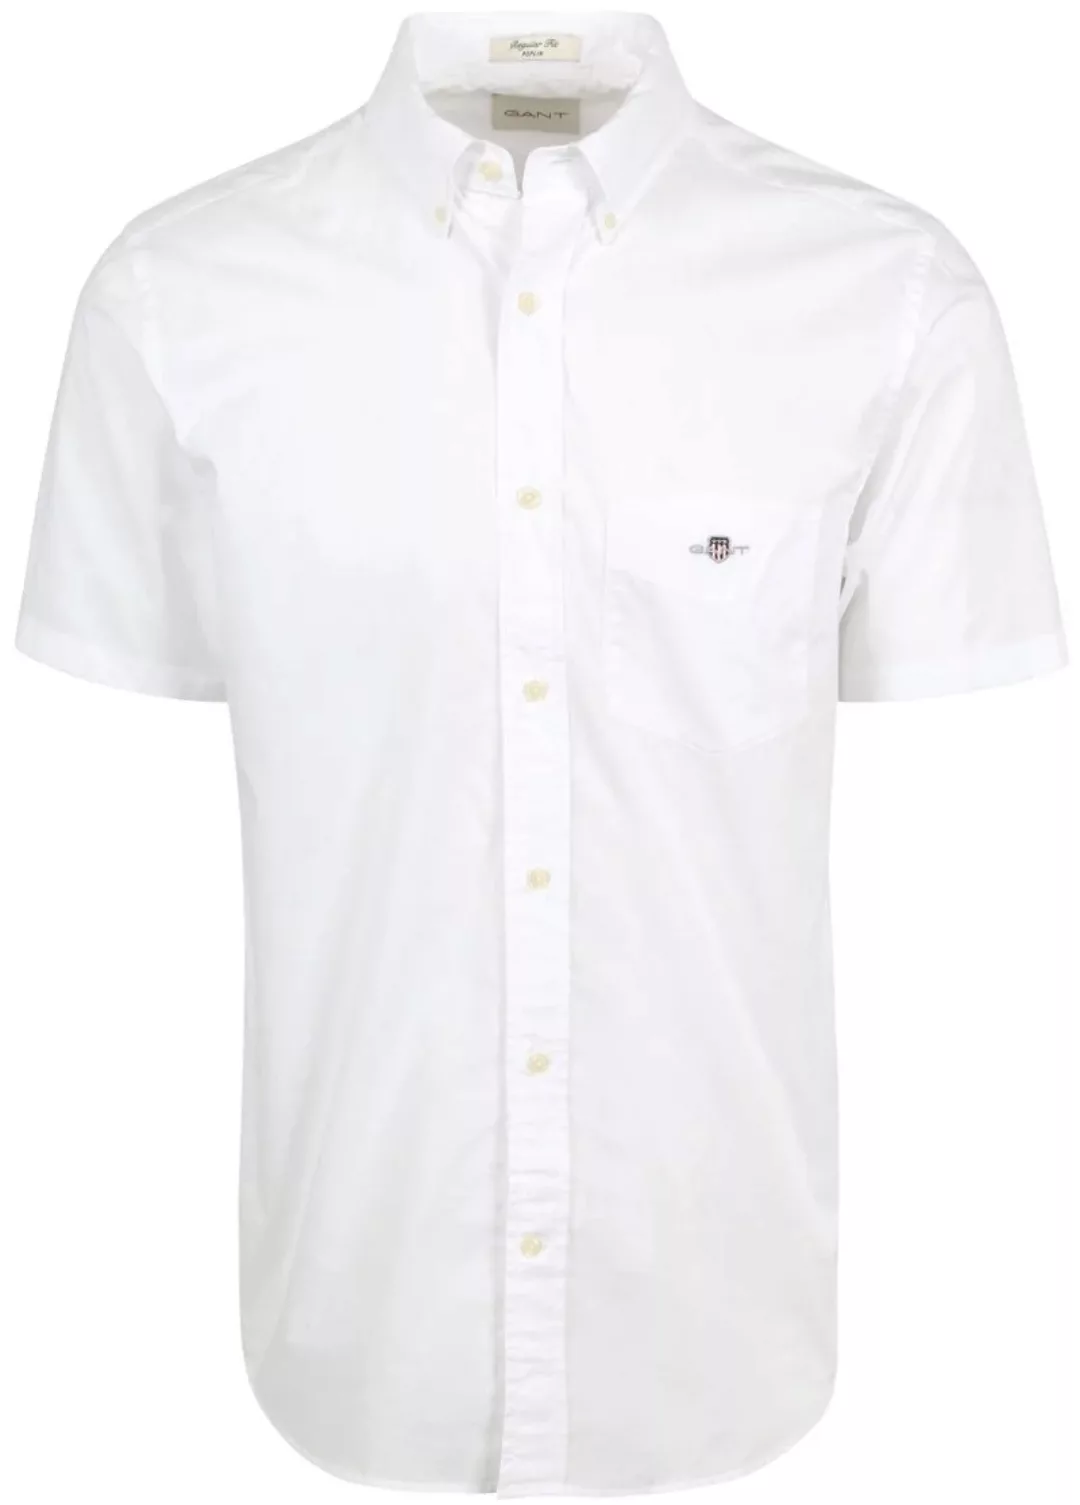 Gant Hemd Short Sleeve Weiß - Größe M günstig online kaufen